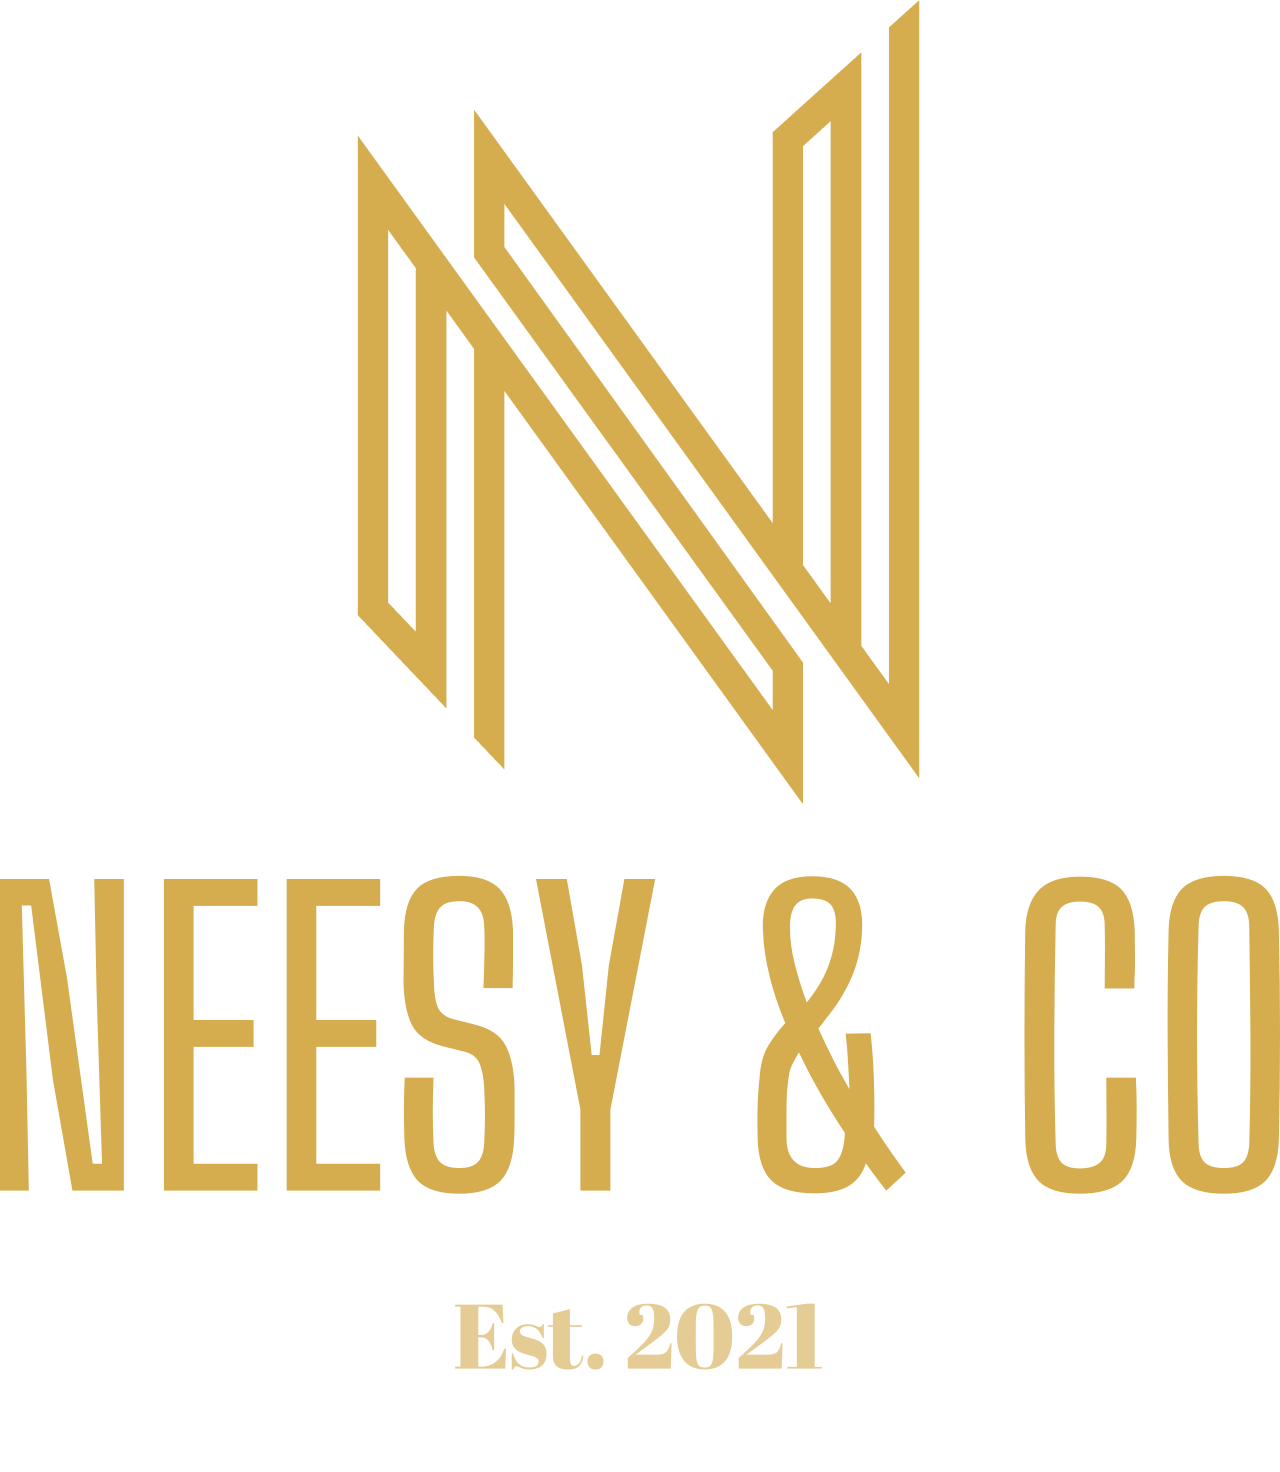 NEESY & CO.